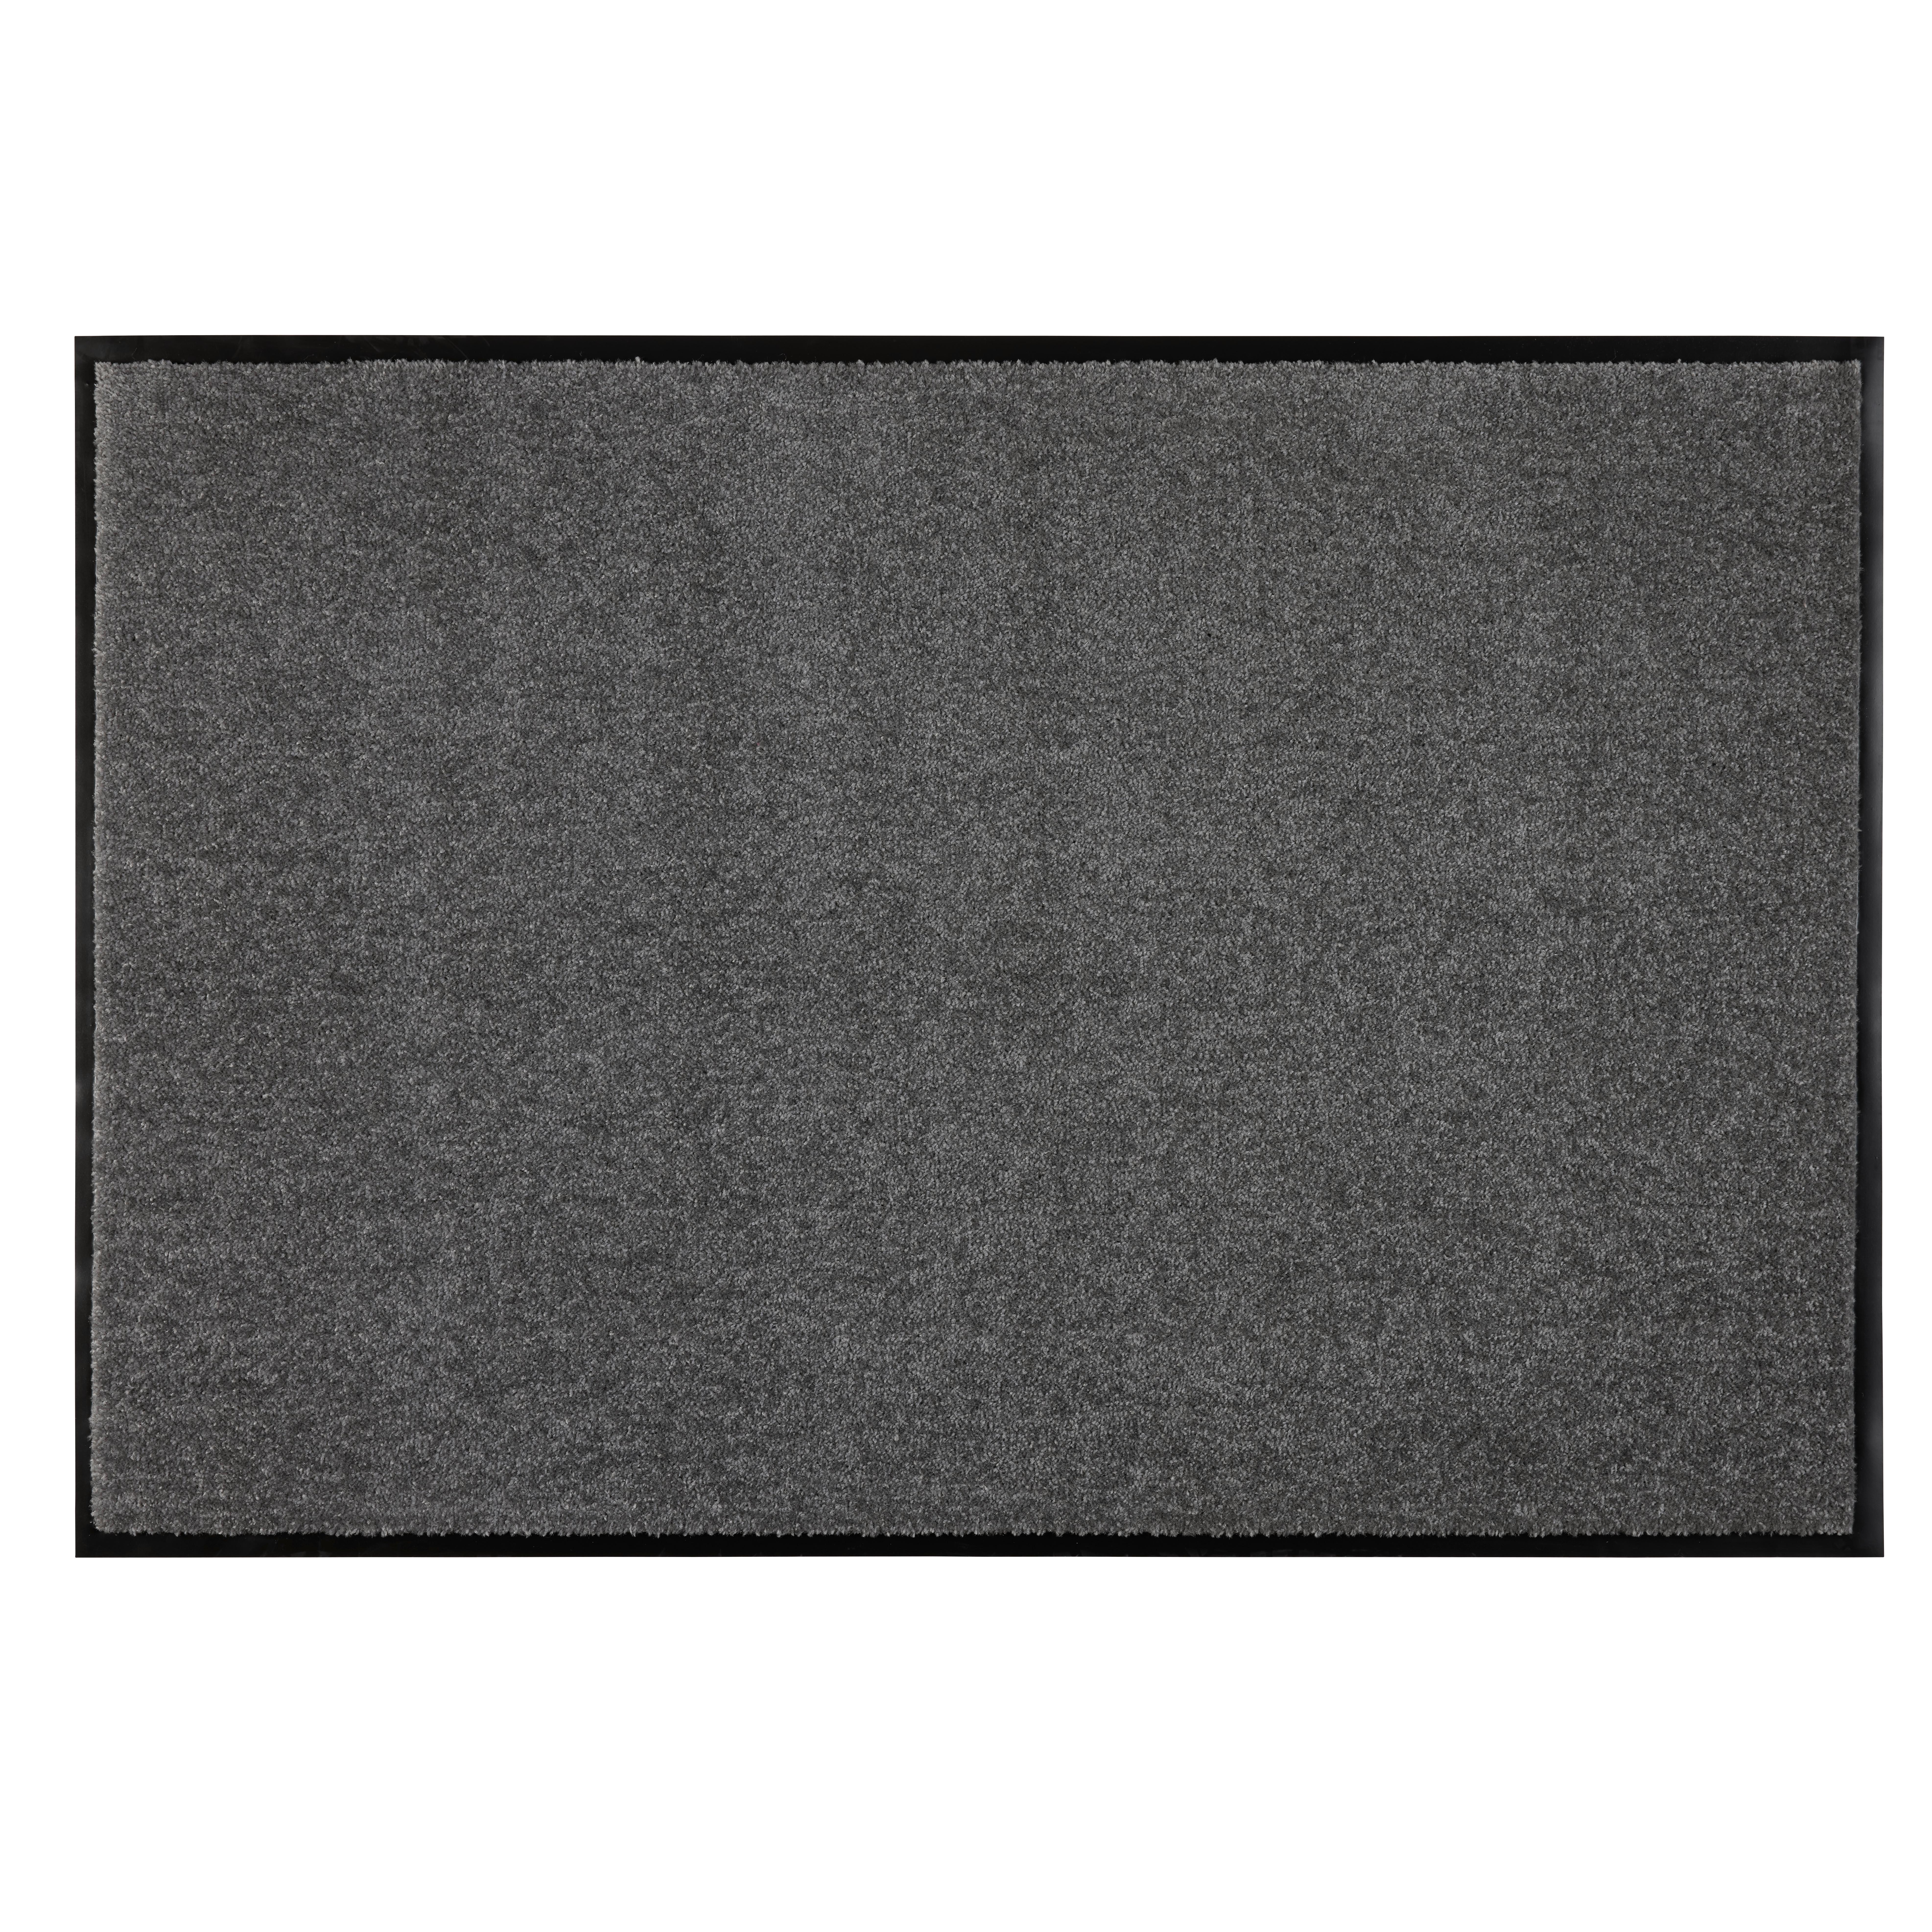 Fußmatte Eton 3 in Schwarz ca. 80x120cm - Schwarz, MODERN, Textil (80/120cm) - Modern Living